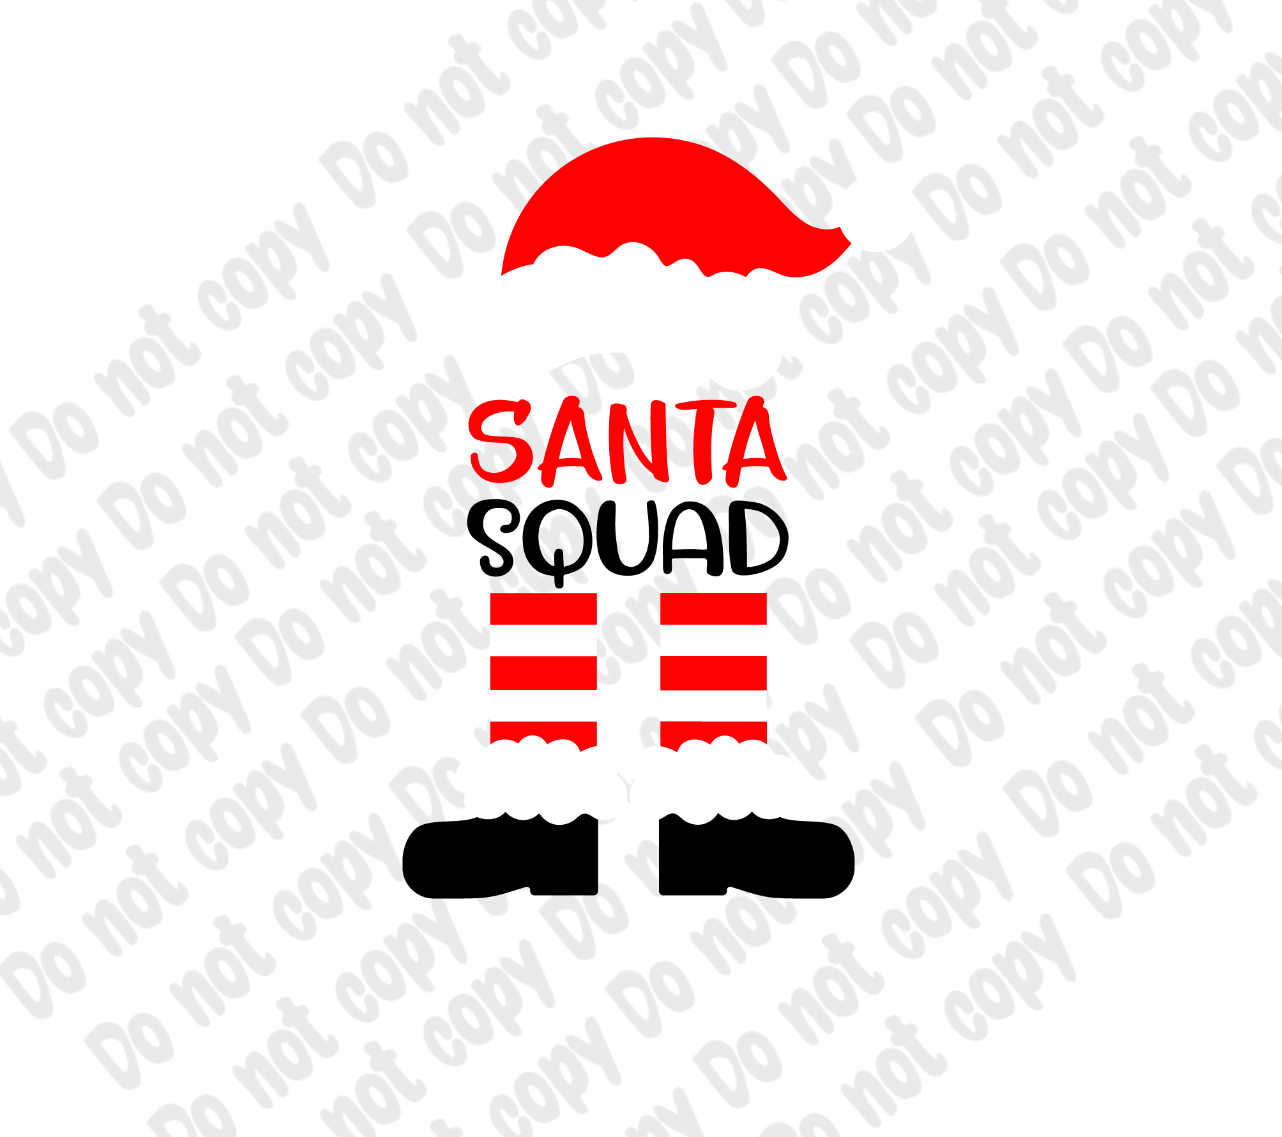 Santa Squad Transfer